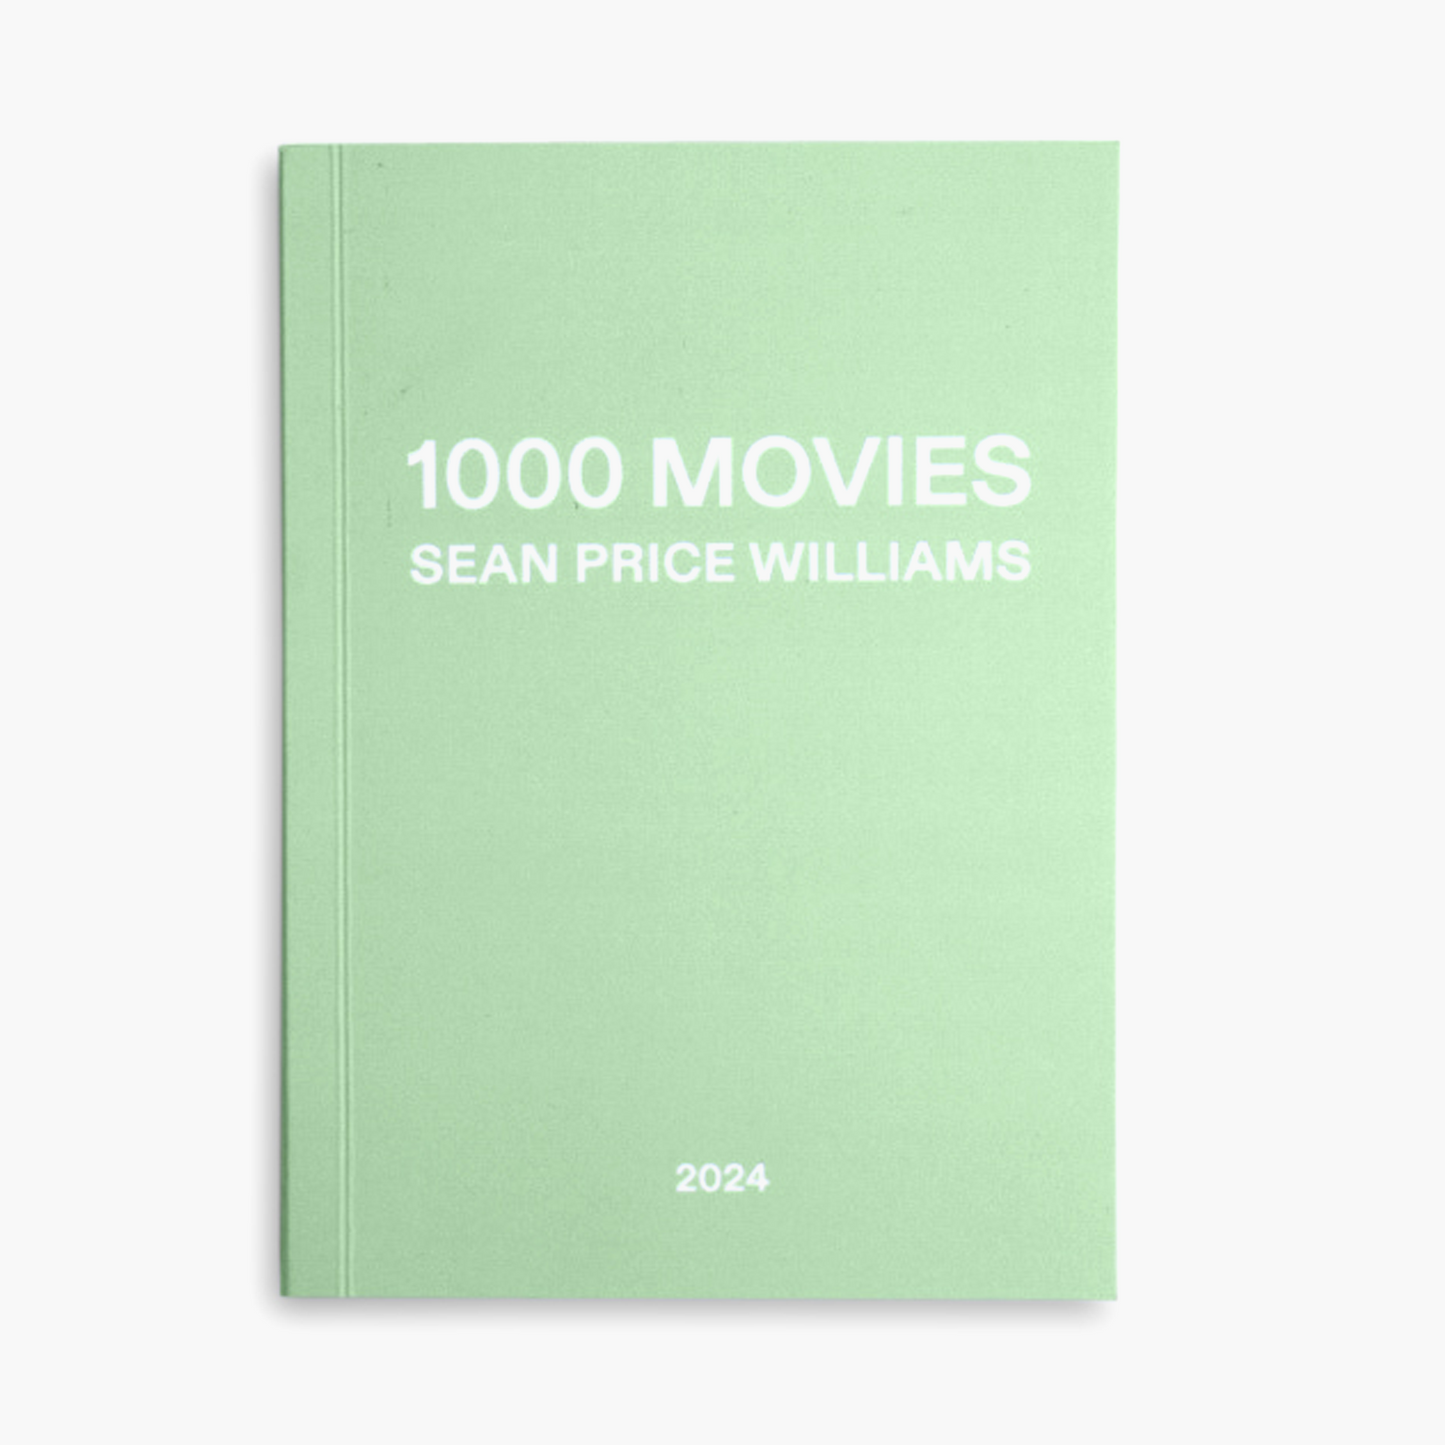 '1000 Movies' by Sean Price Williams